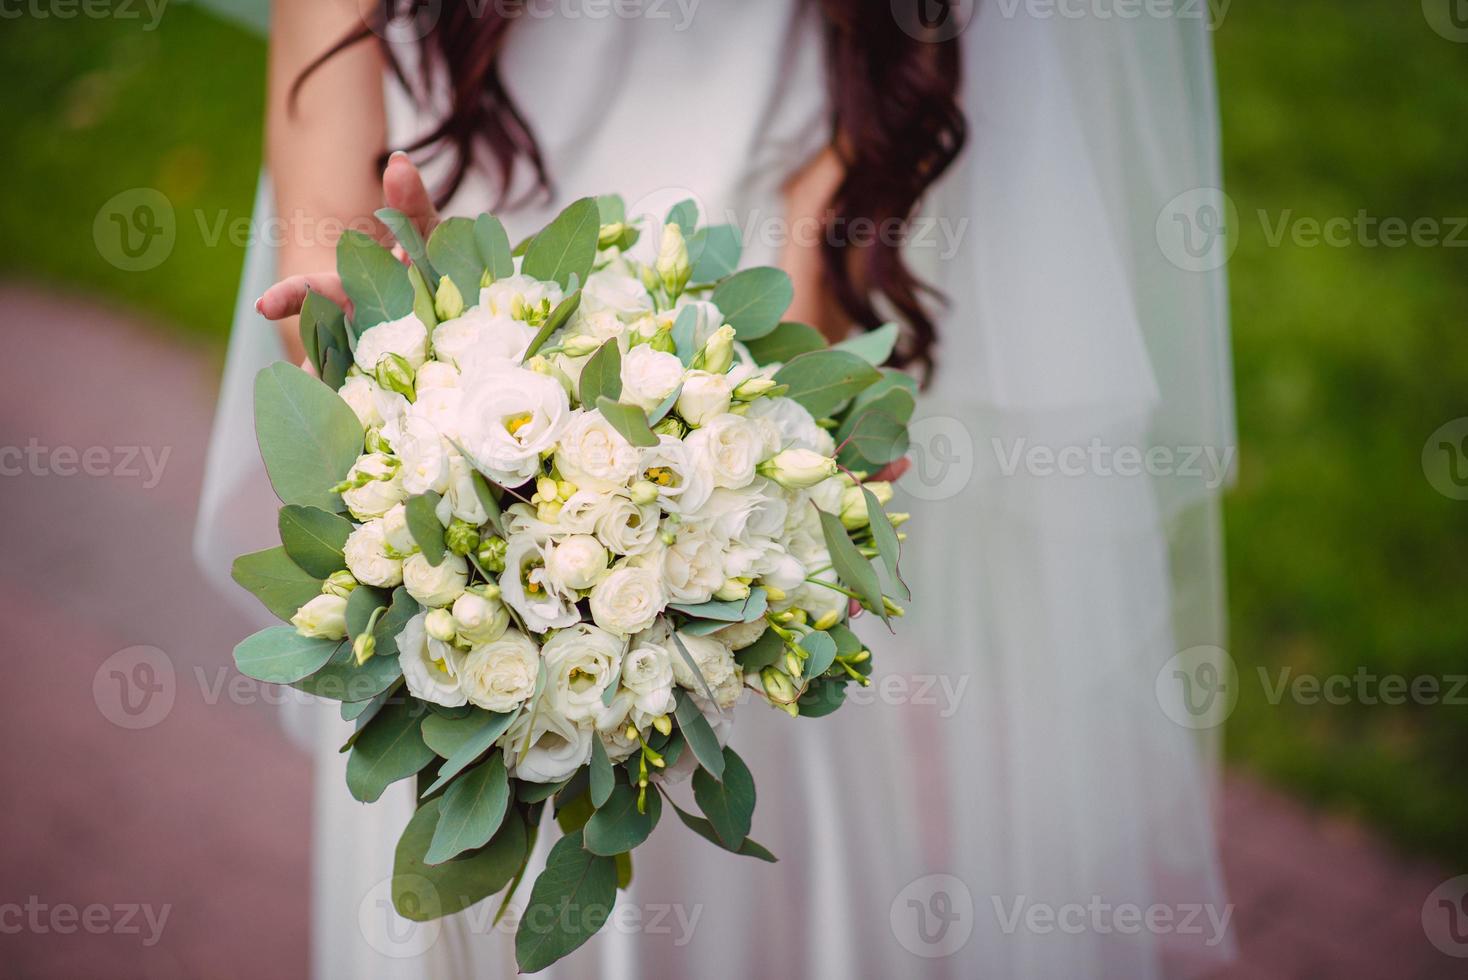 de bruid houdt een bruiloft boeket in haar handen, bruiloft dag bloemen. foto